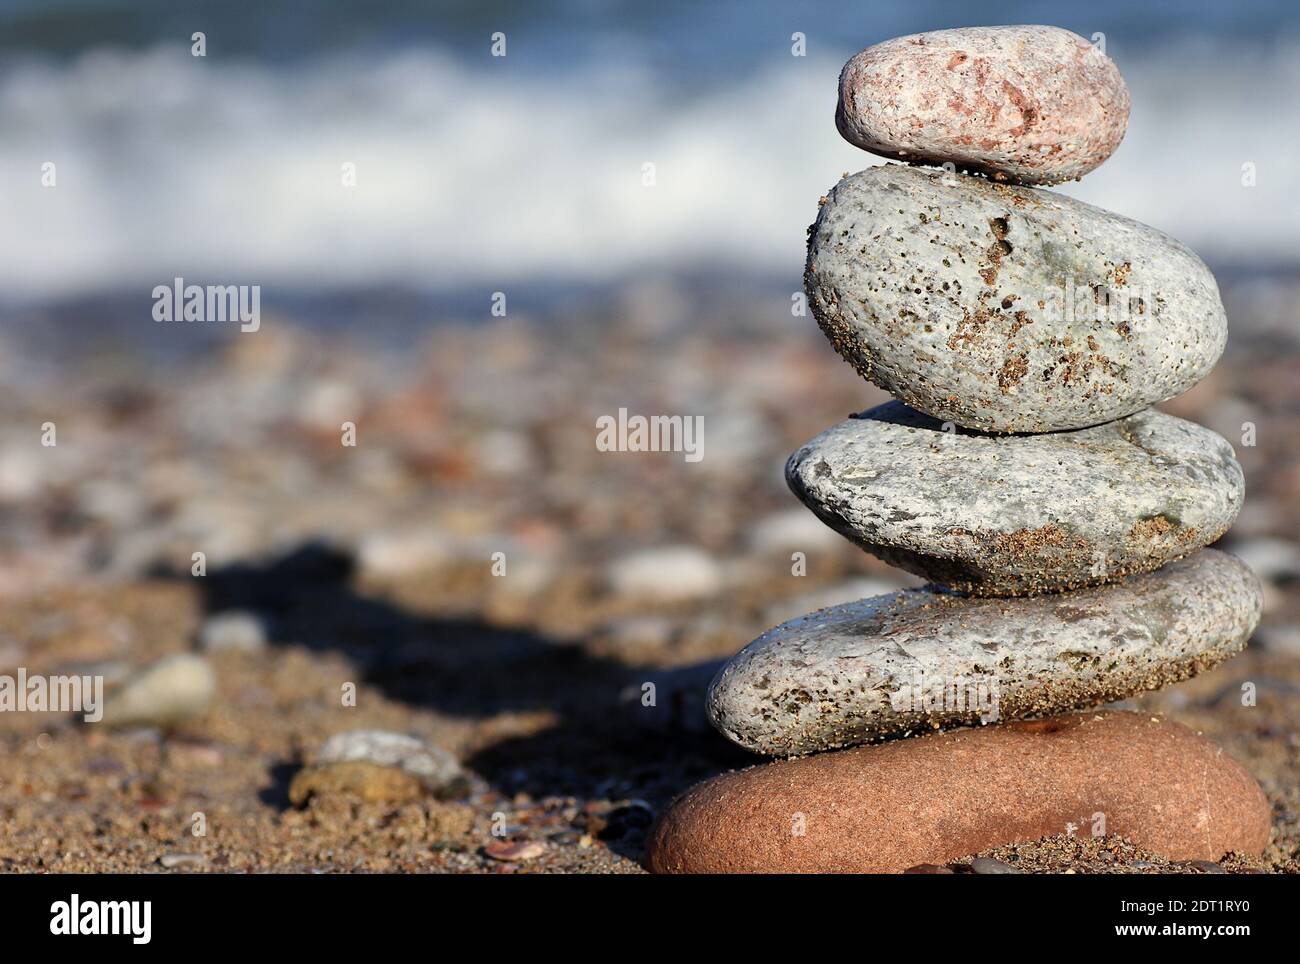 Pierres d'équilibrage: Une pile de pierres colorées équilibrée l'une sur l'autre avec une plage de galets et une vague se brisant sur l'estran en arrière-plan Banque D'Images